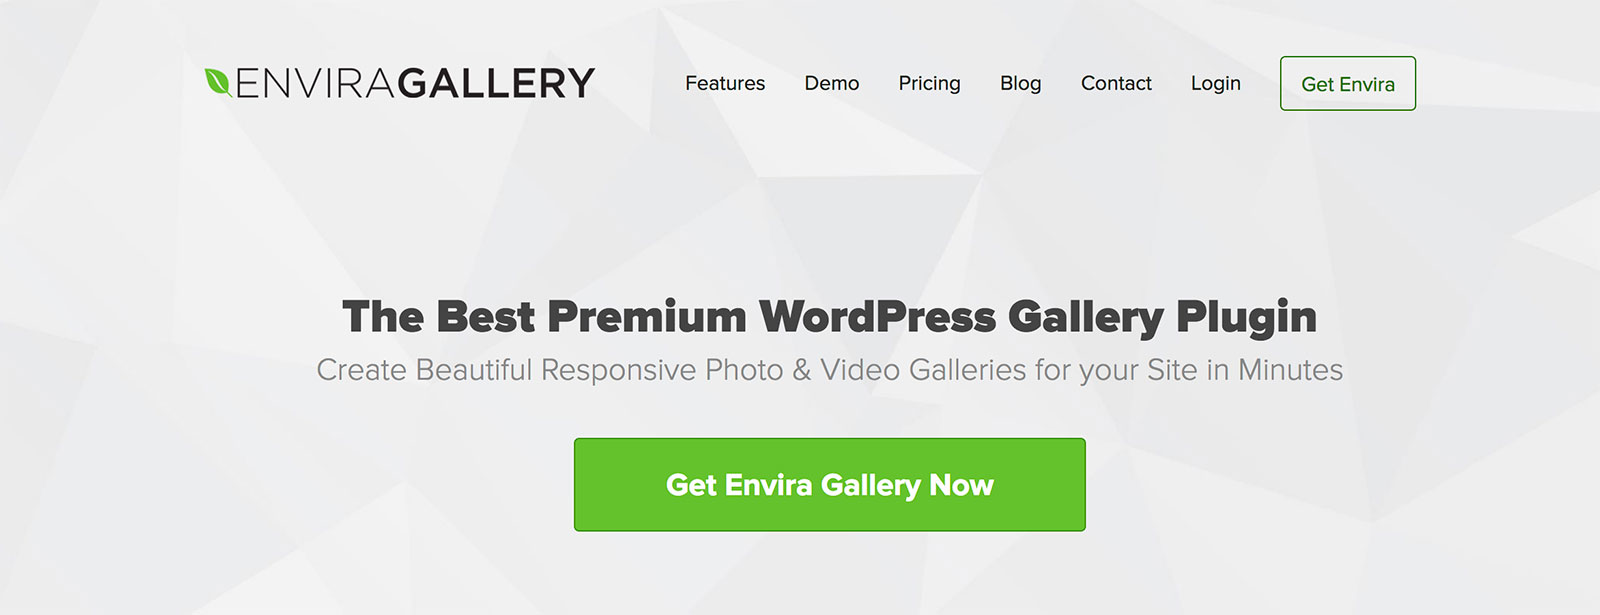 Envira Gallery Plugin Review